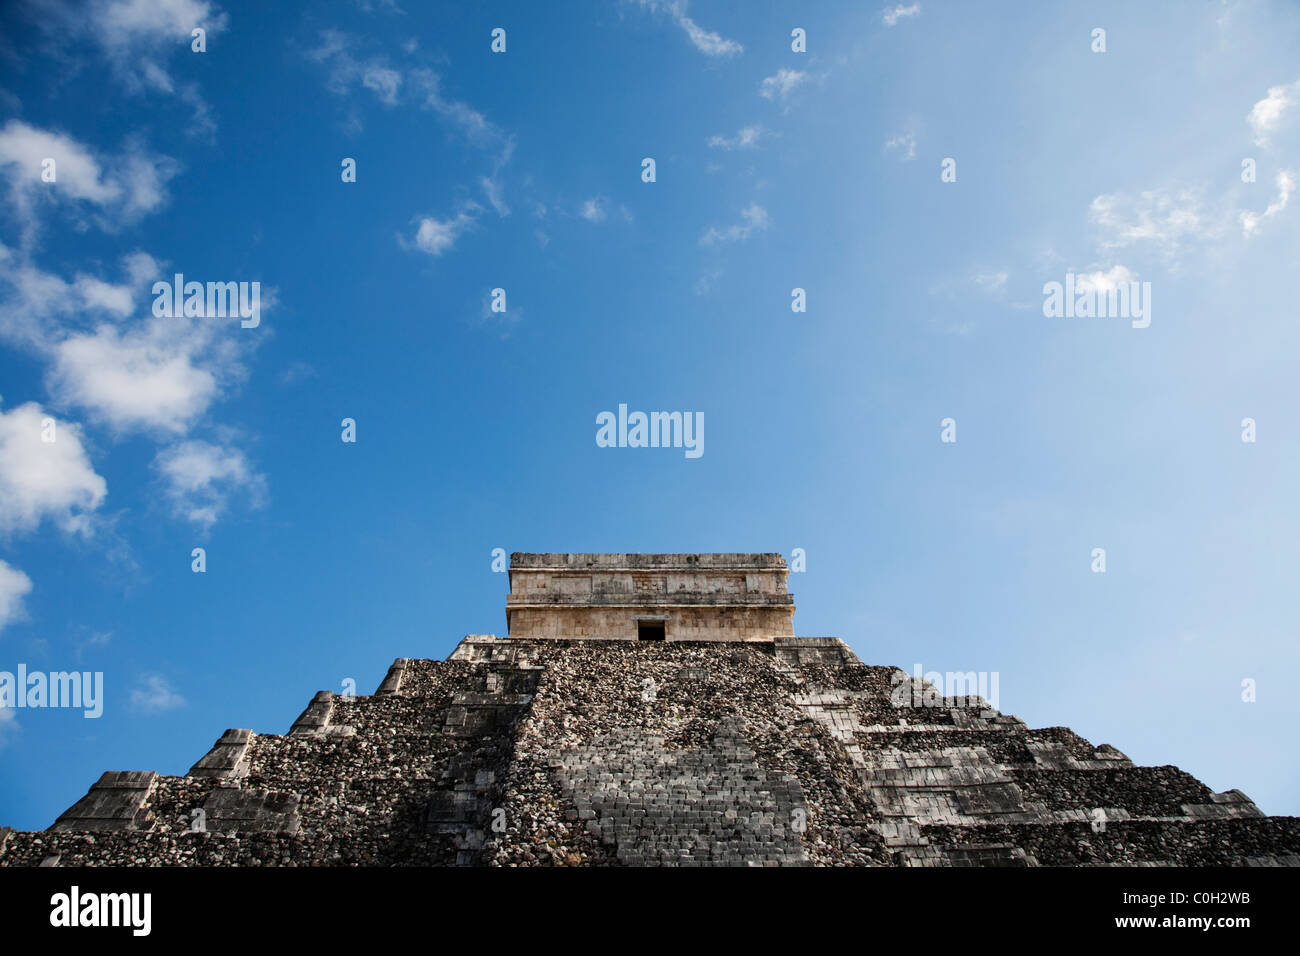 El Castillo präkolumbische Maya-Pyramide in Chichen Itza Yucatan, Mexiko Stockfoto